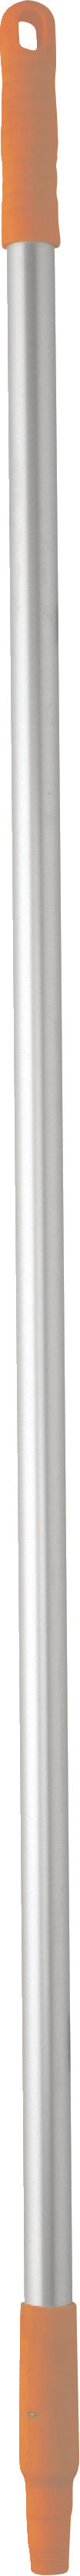 Vikan - 2958 - Aluminium Handle, Ø25mm, 1260mm